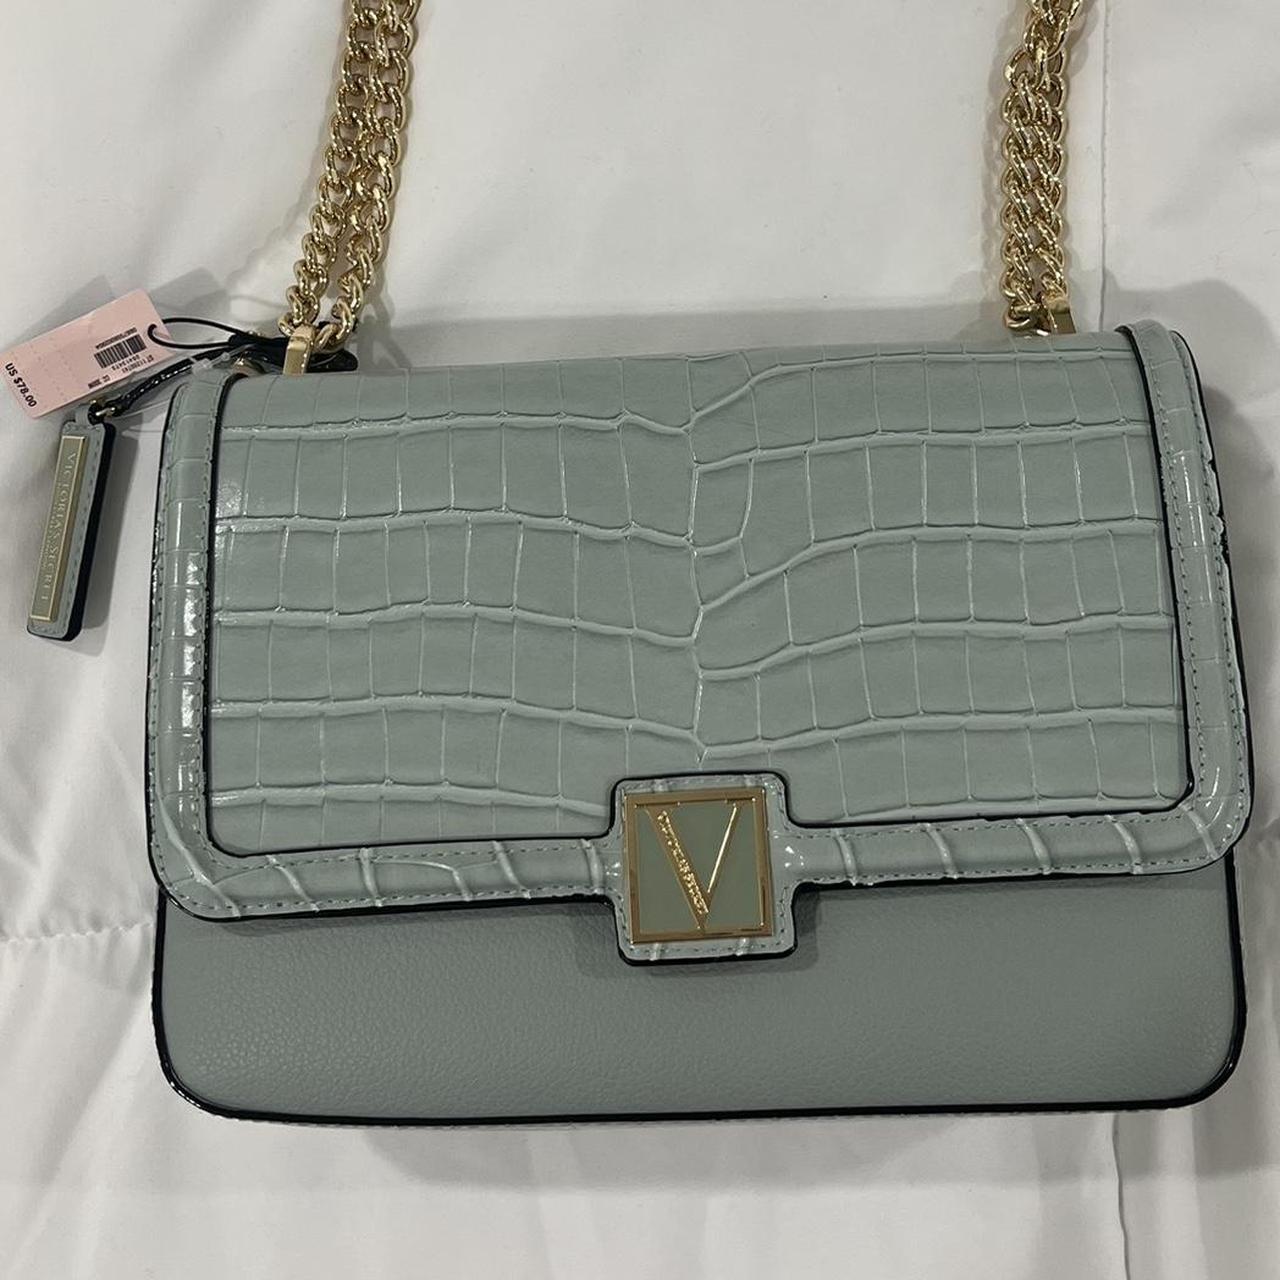 Victoria secret purse Brand new sage green/ aqua - Depop